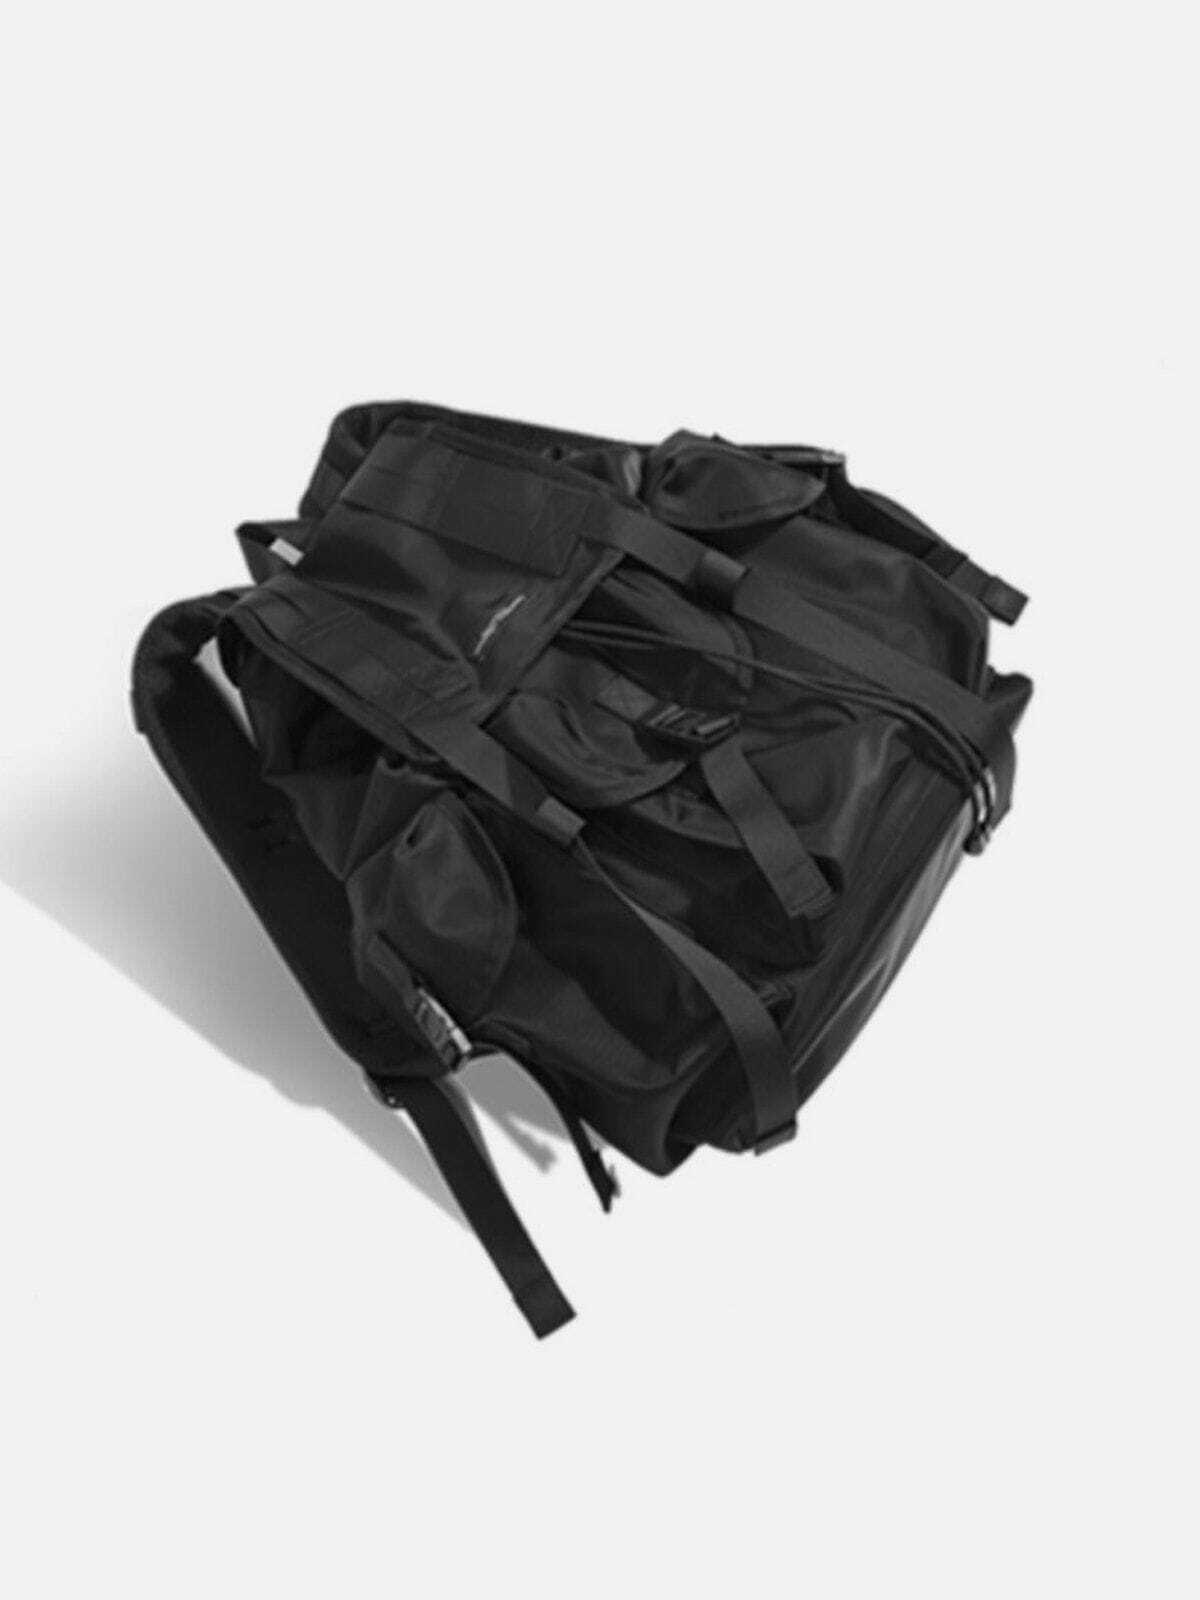 versatile multipocket shoulder bag edgy & functional 3346